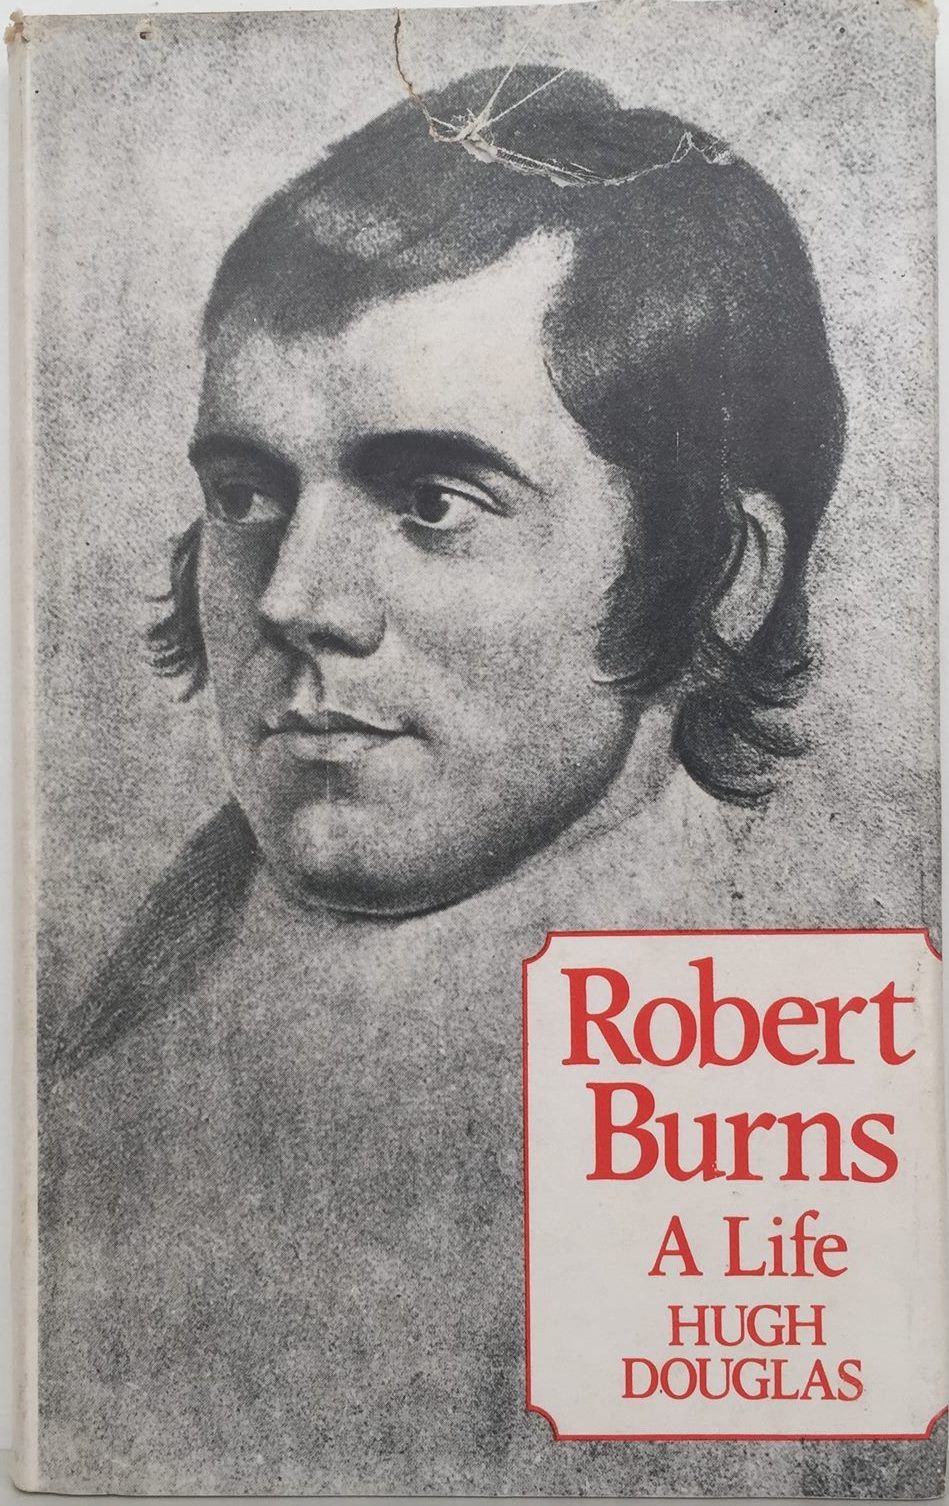 ROBERT BURNS: A Life